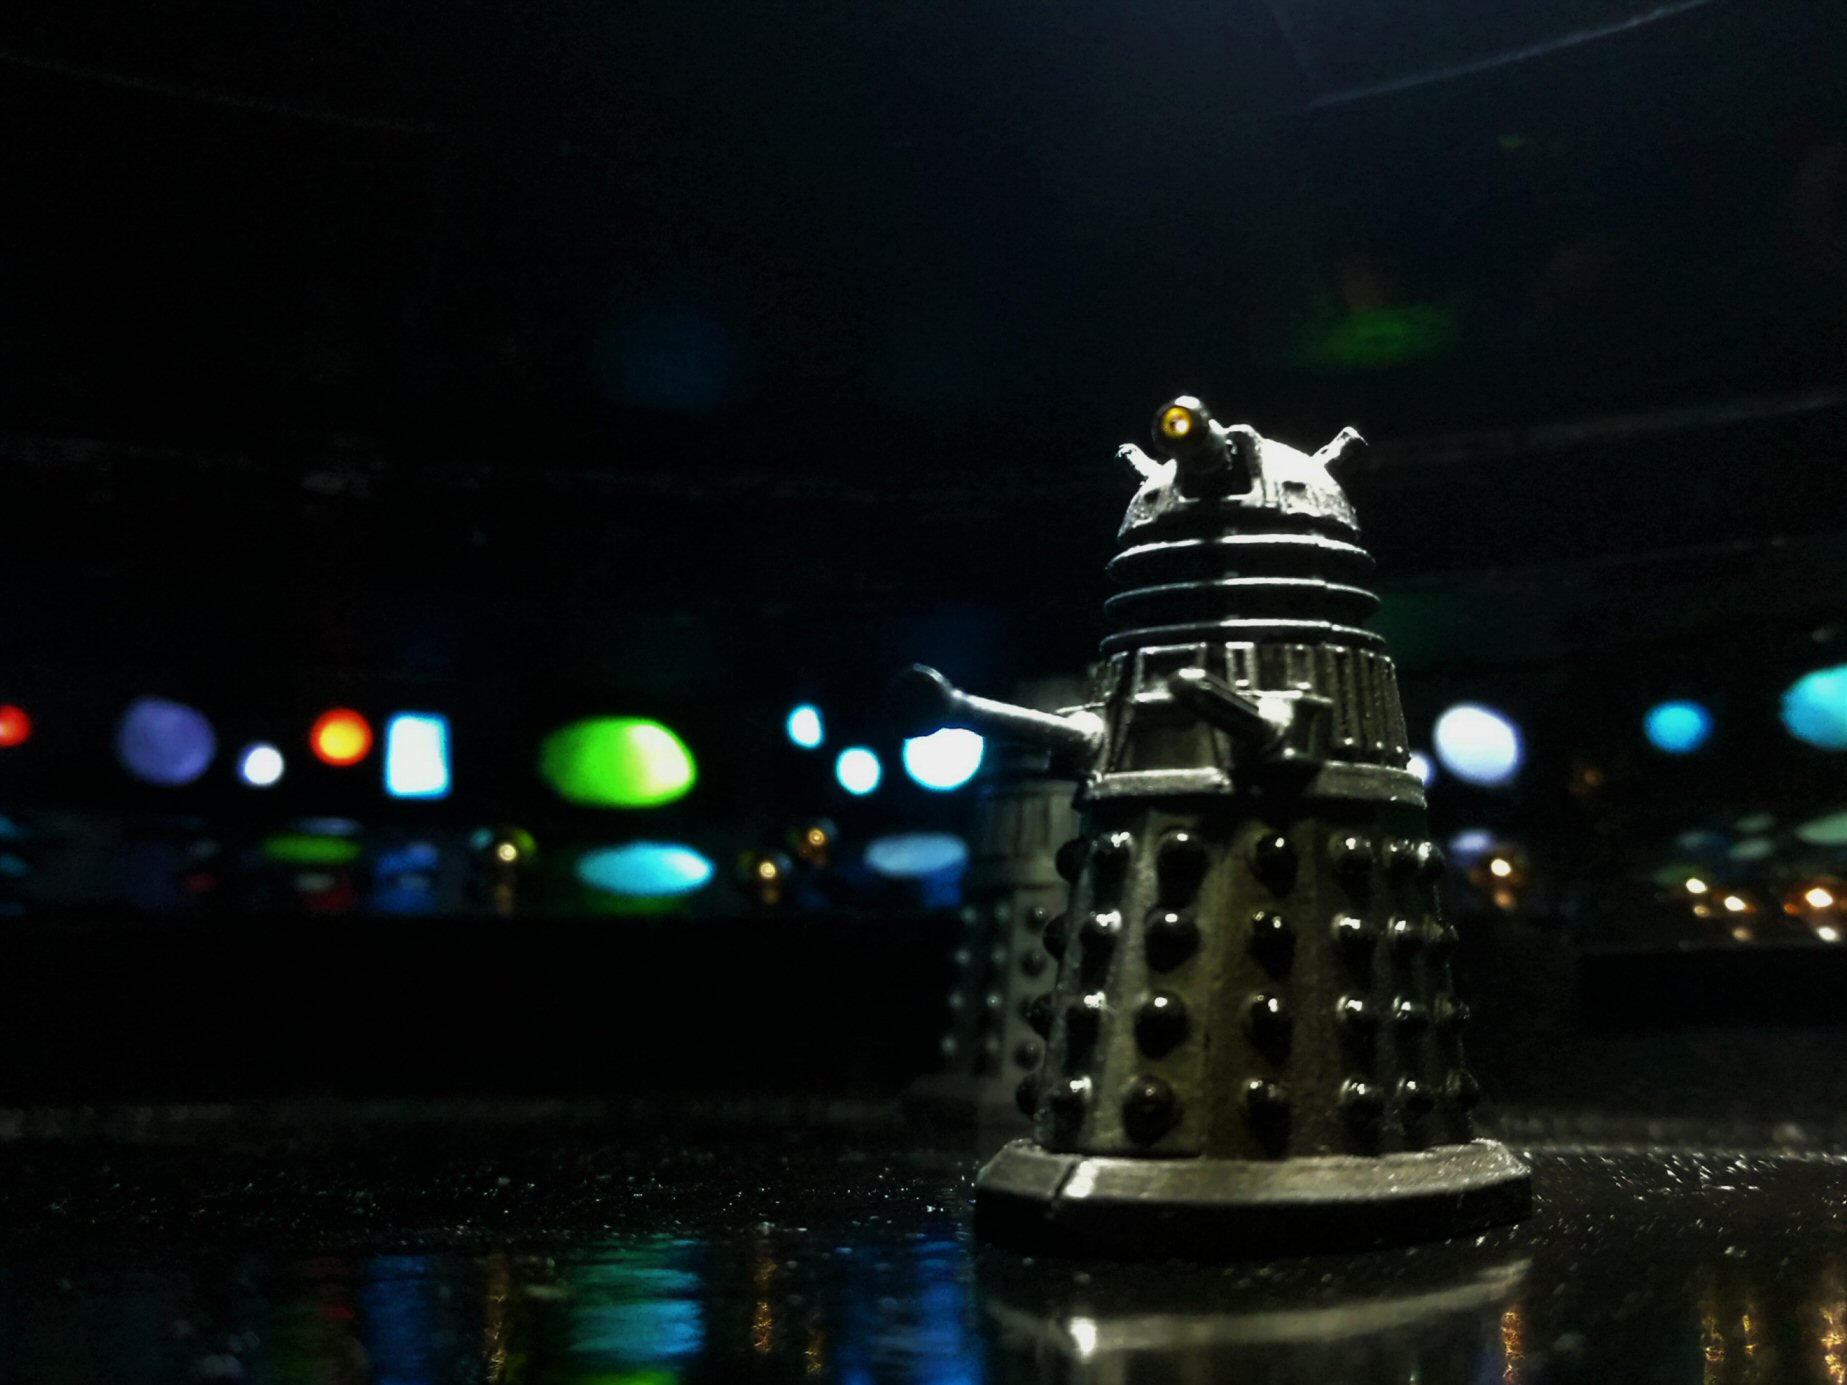 Dalek Wars Dalek Saucer (48)b.jpg